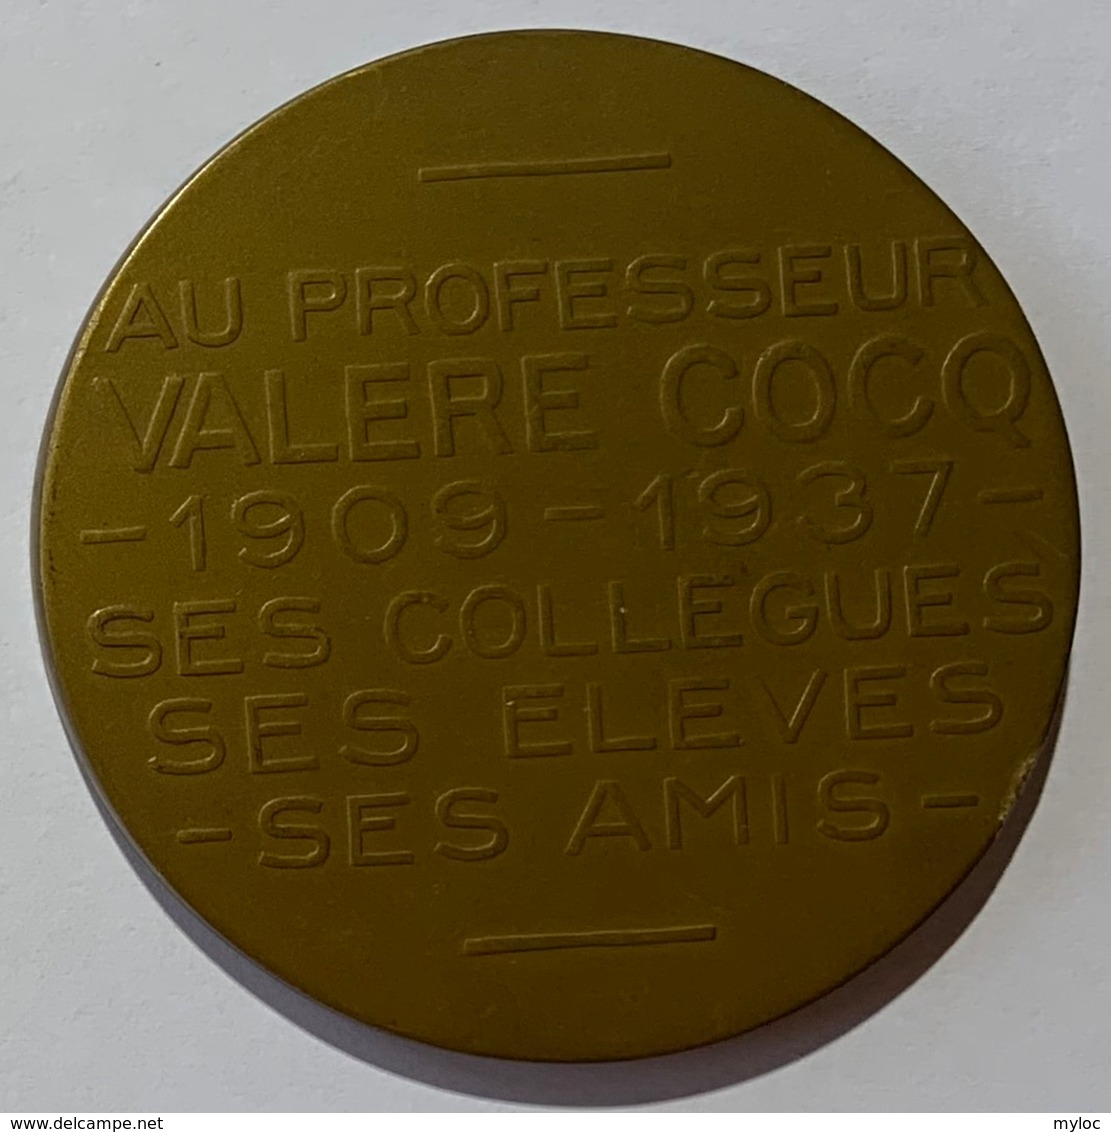 Médaille Bronze. Valère Cocq. Au Professeur Valère Cocq. 1909-1937. Armand Bonnetain. - Professionnels / De Société